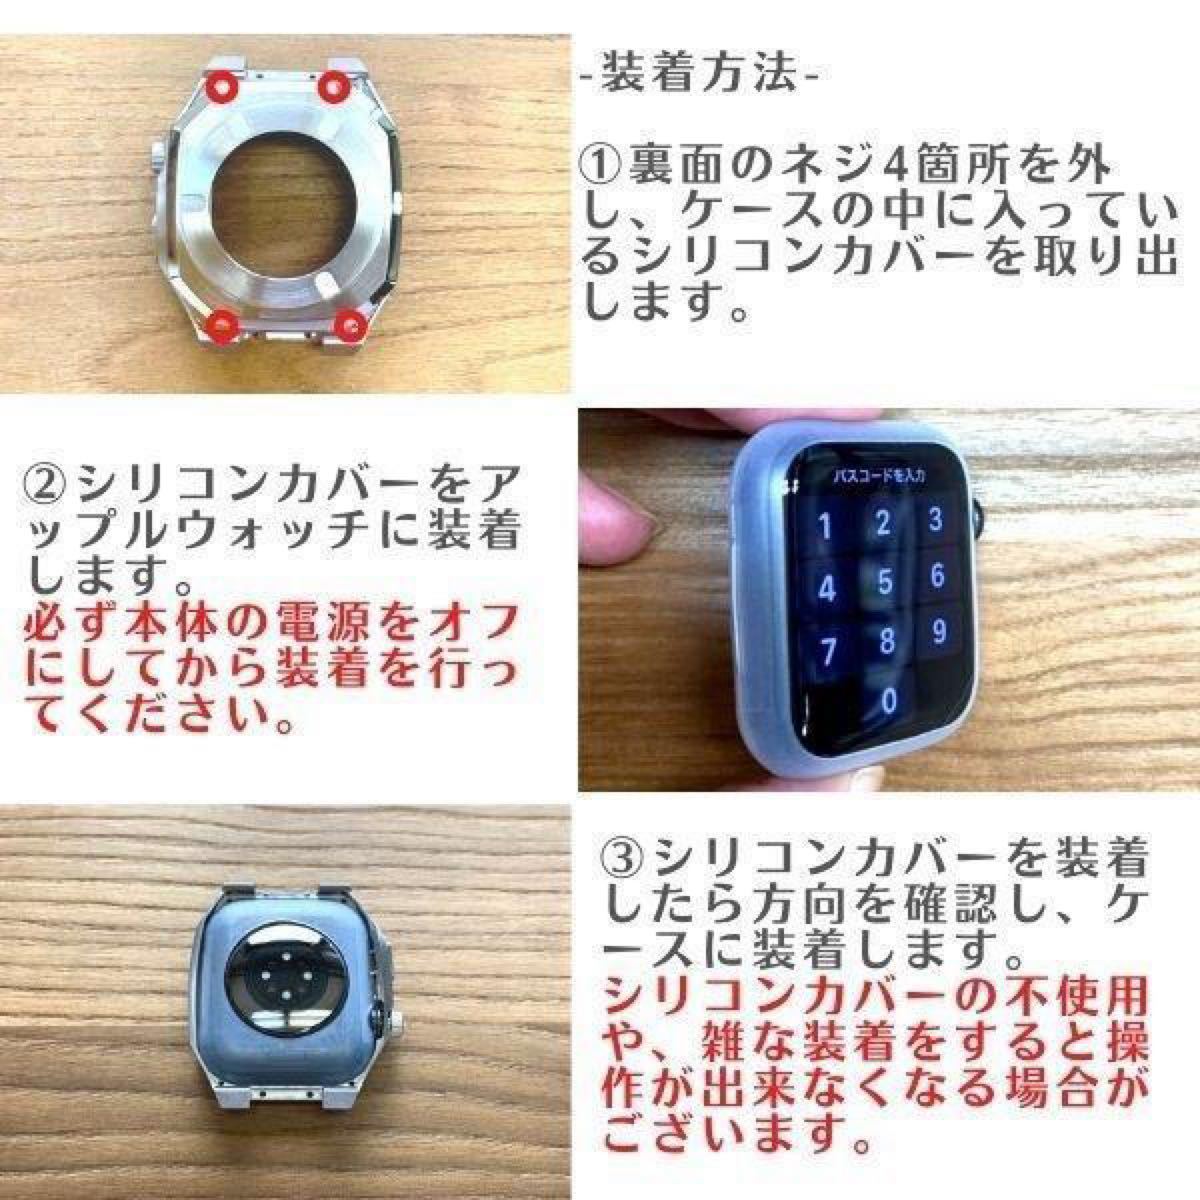 45mm 銀 apple watch メタル ラバーベルト カスタム 金属